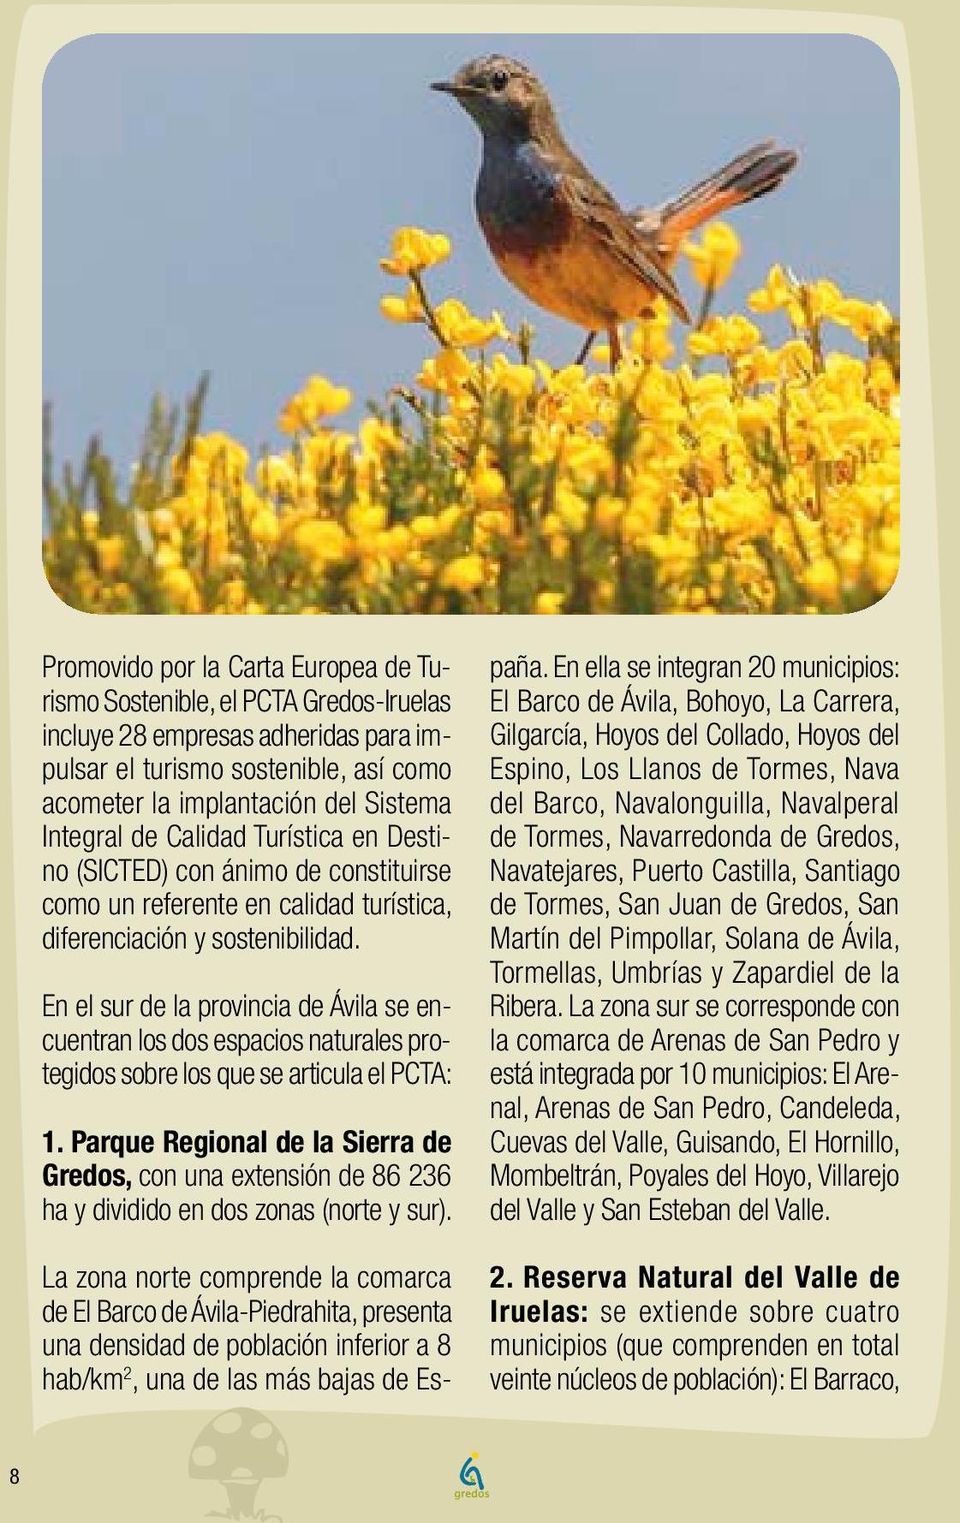 En el sur de la provincia de Ávila se encuentran los dos espacios naturales protegidos sobre los que se articula el PCTA: 1.